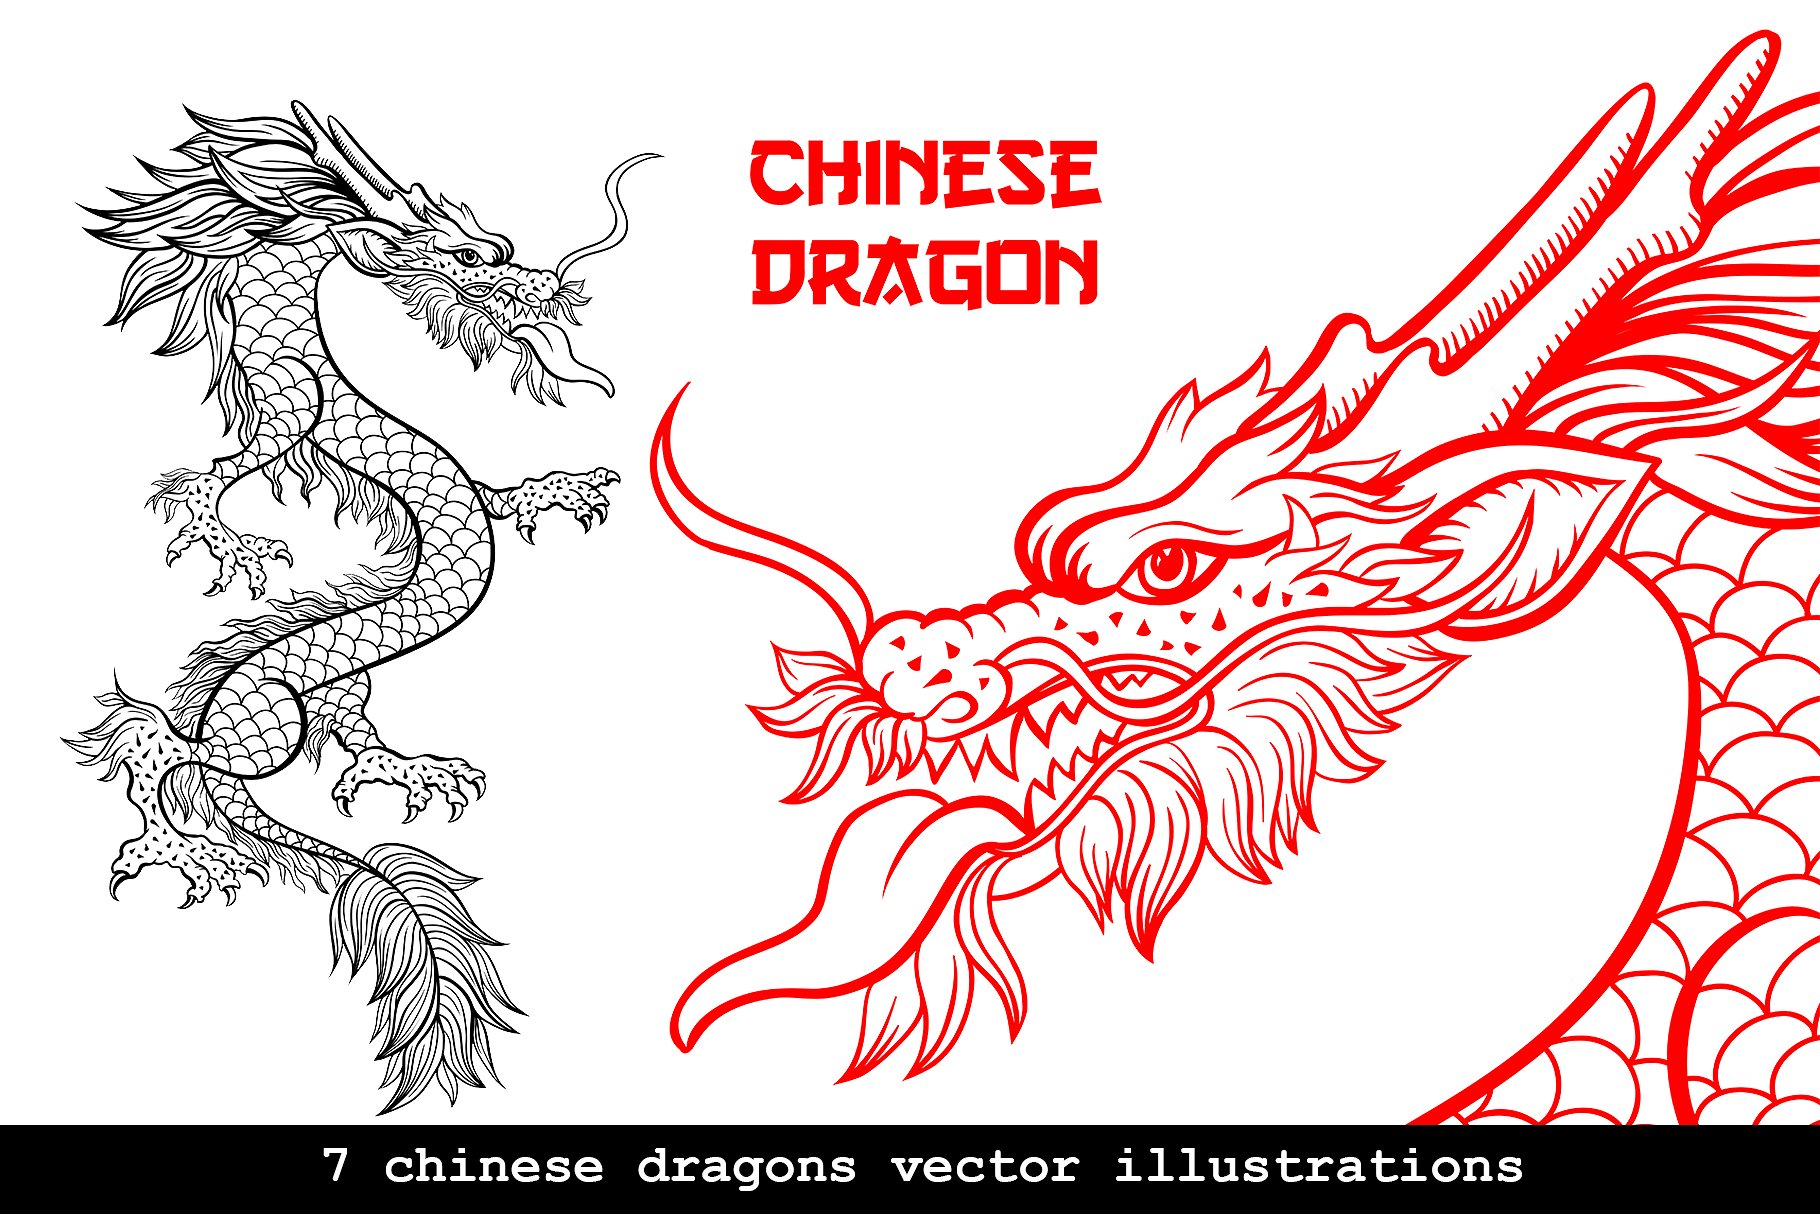 手绘中国风格中国龙AI矢量插图 Hand Drawn Chinese Style Chinese Dragon Illustrator Vector illustration插图2